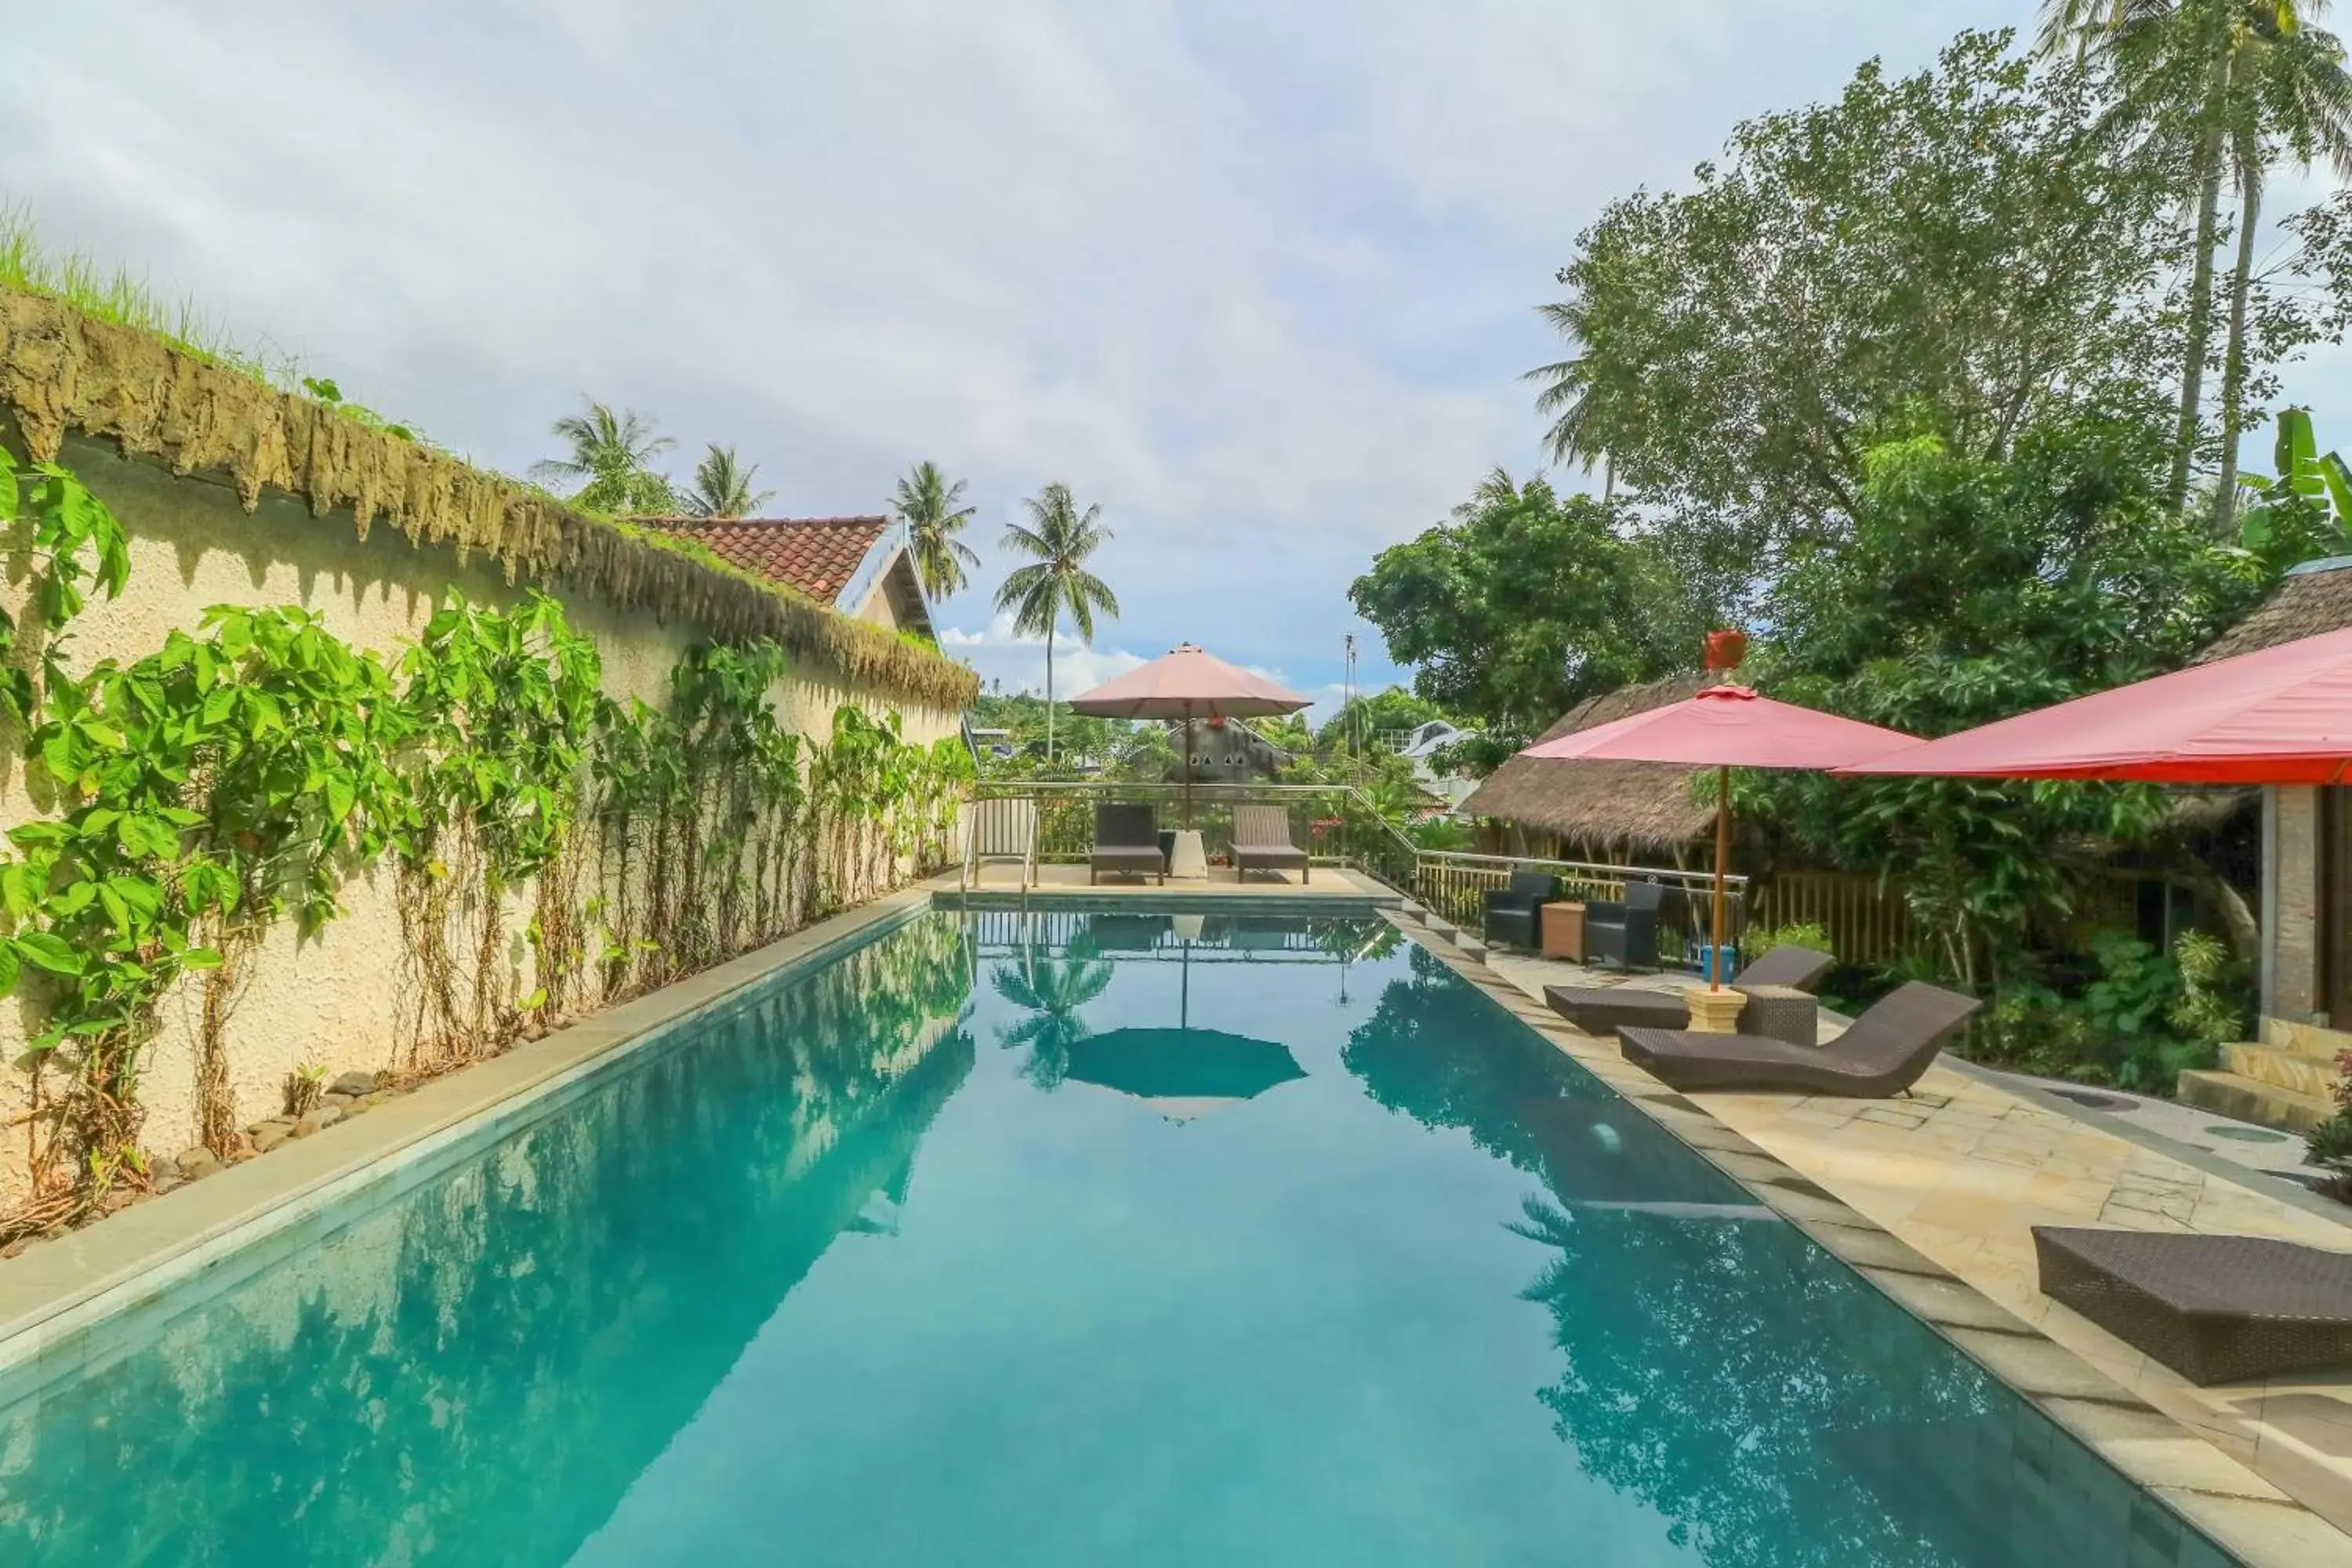 Swimming pool in Senggigi Cottages Lombok